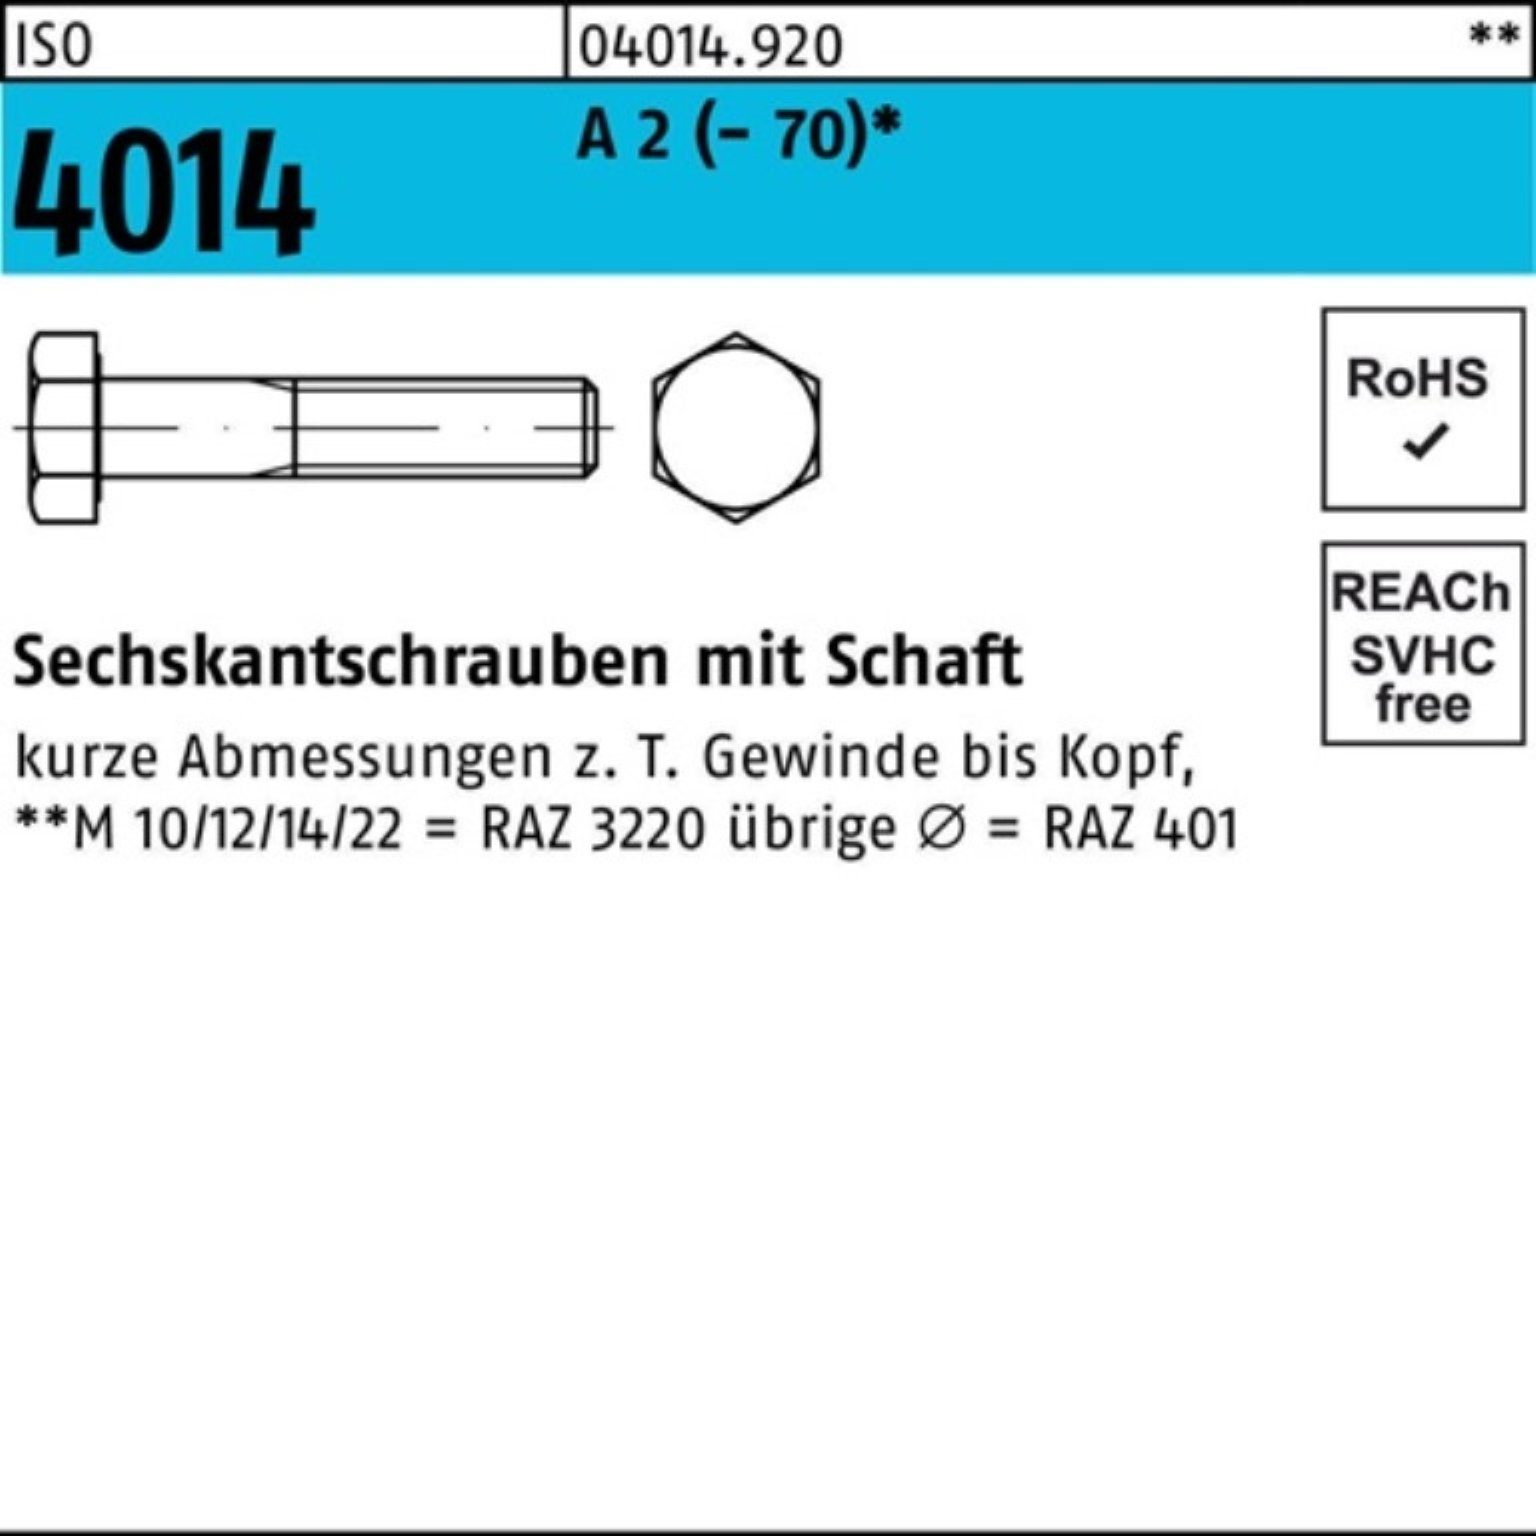 Bufab Sechskantschraube 100er Pack Sechskantschraube ISO 4014 Schaft M22x 120 A 2 (70) 10 St